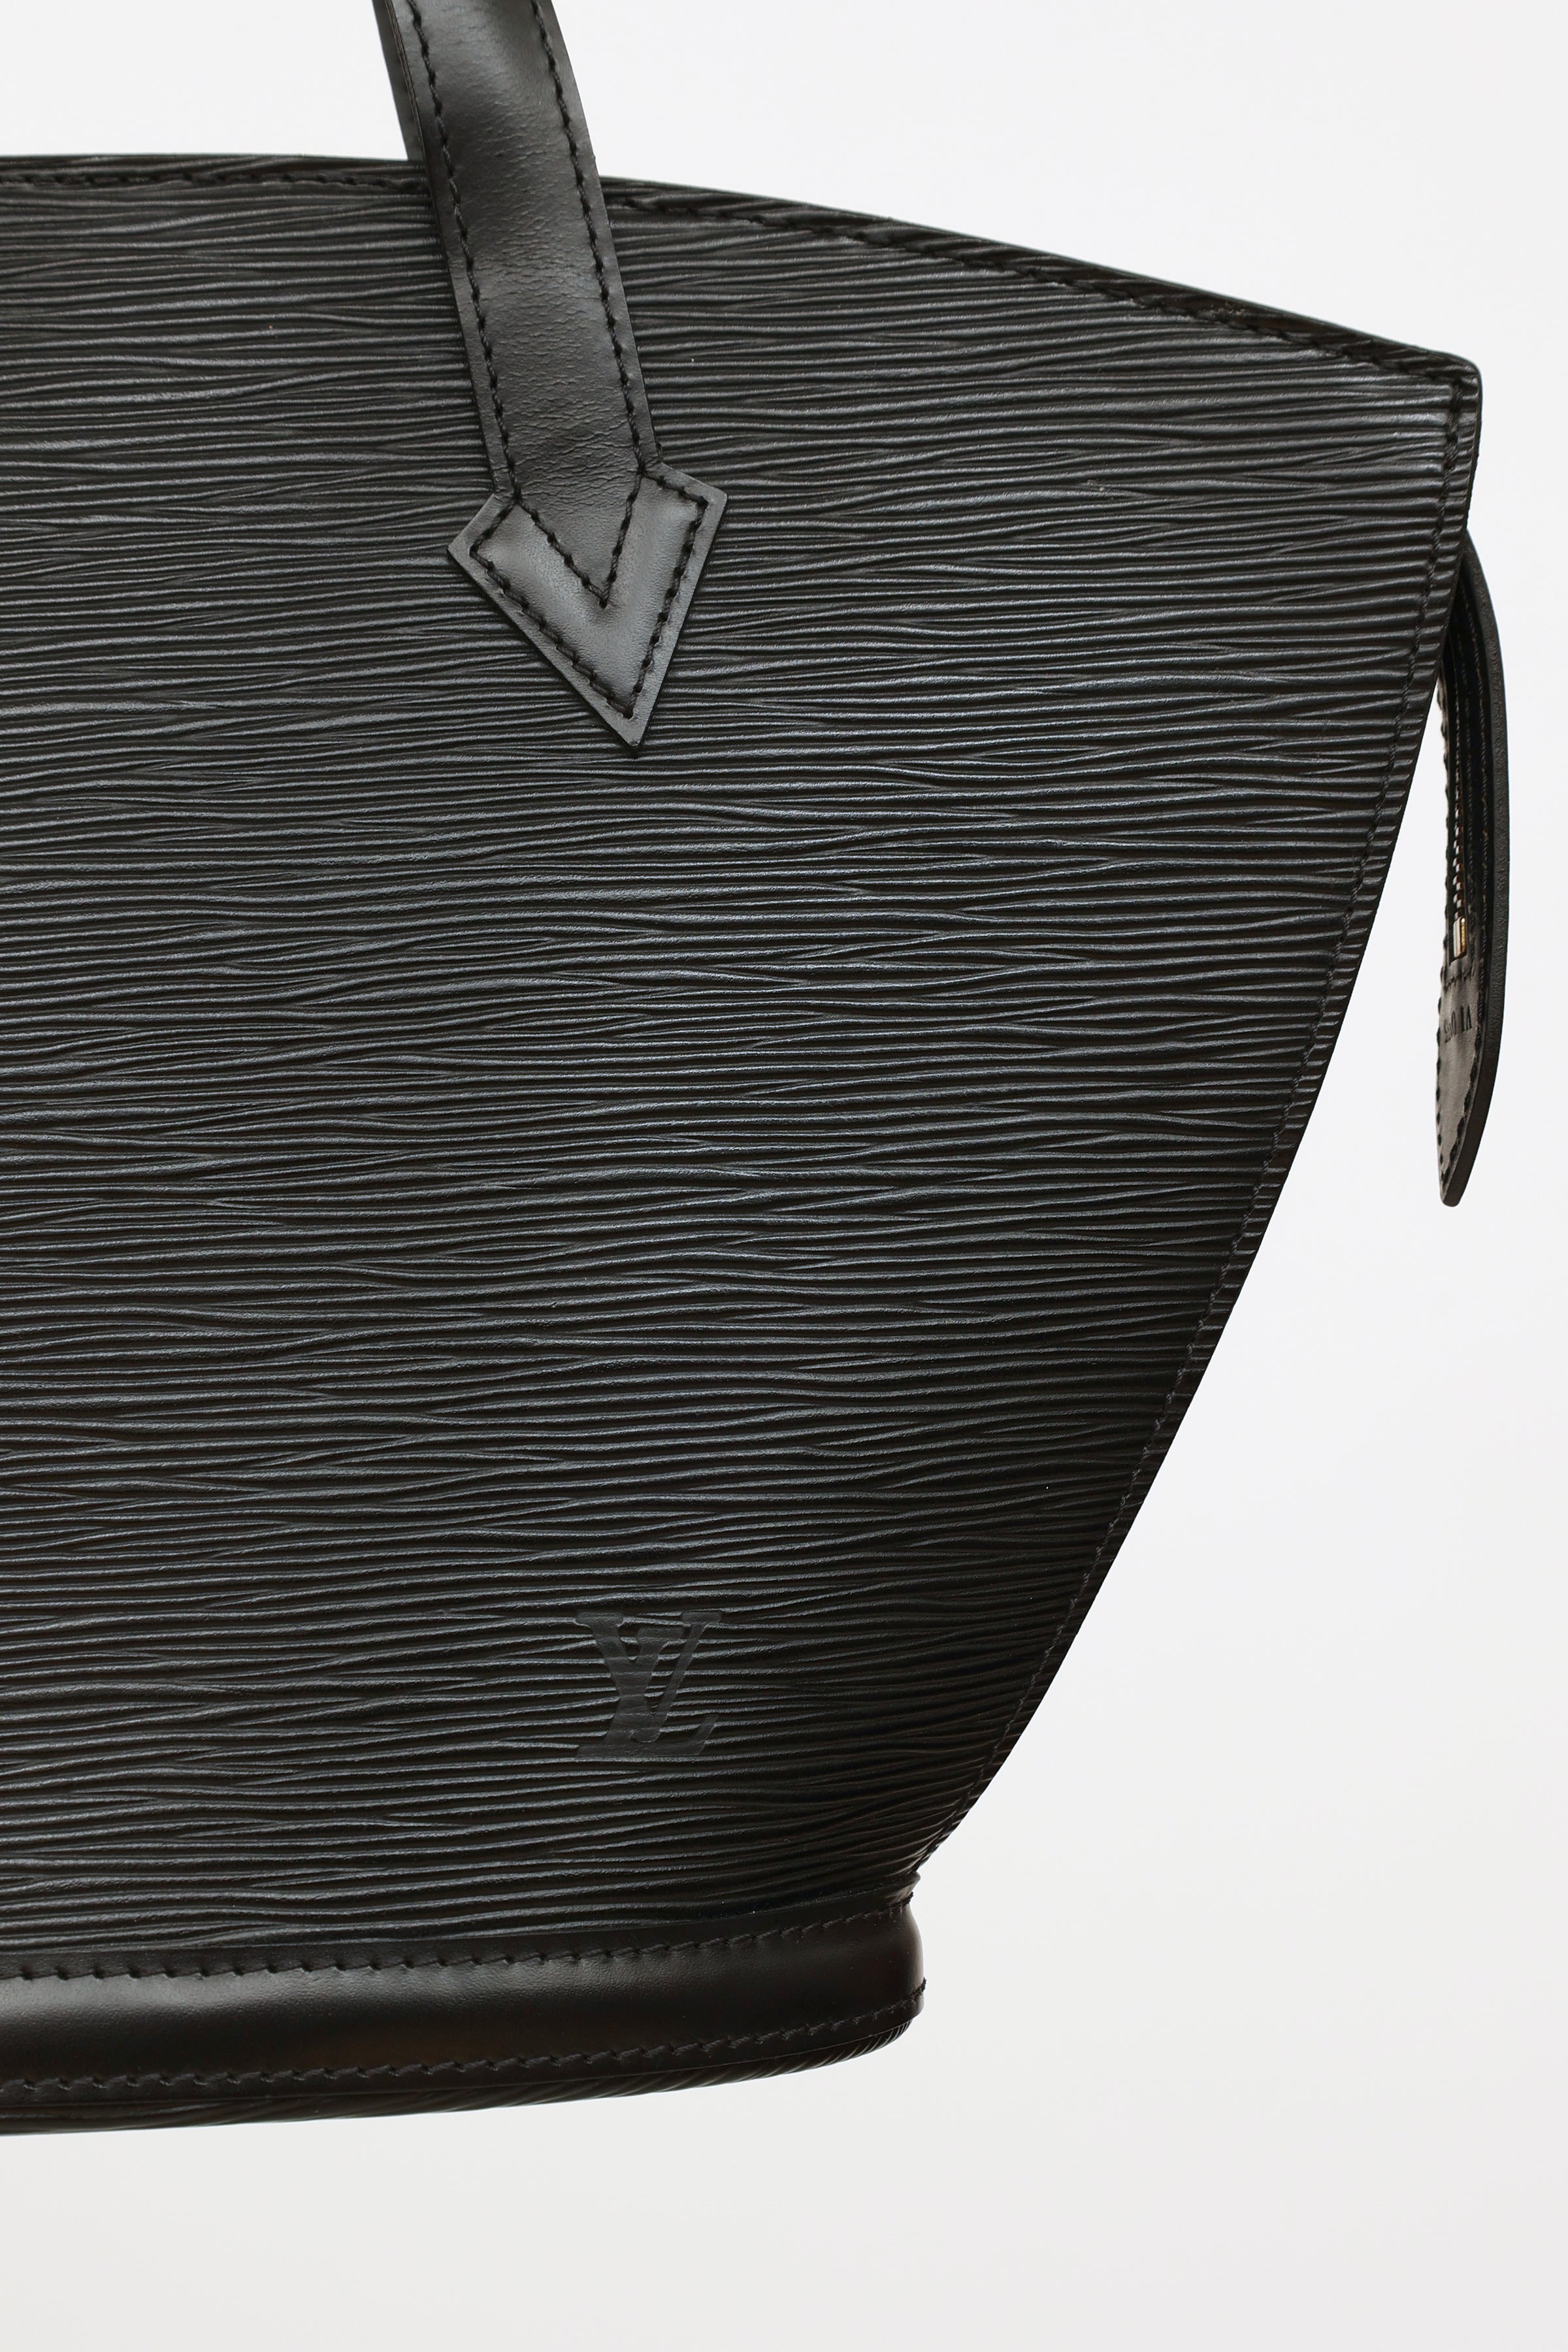 Saint jacques leather handbag Louis Vuitton Black in Leather - 29491106